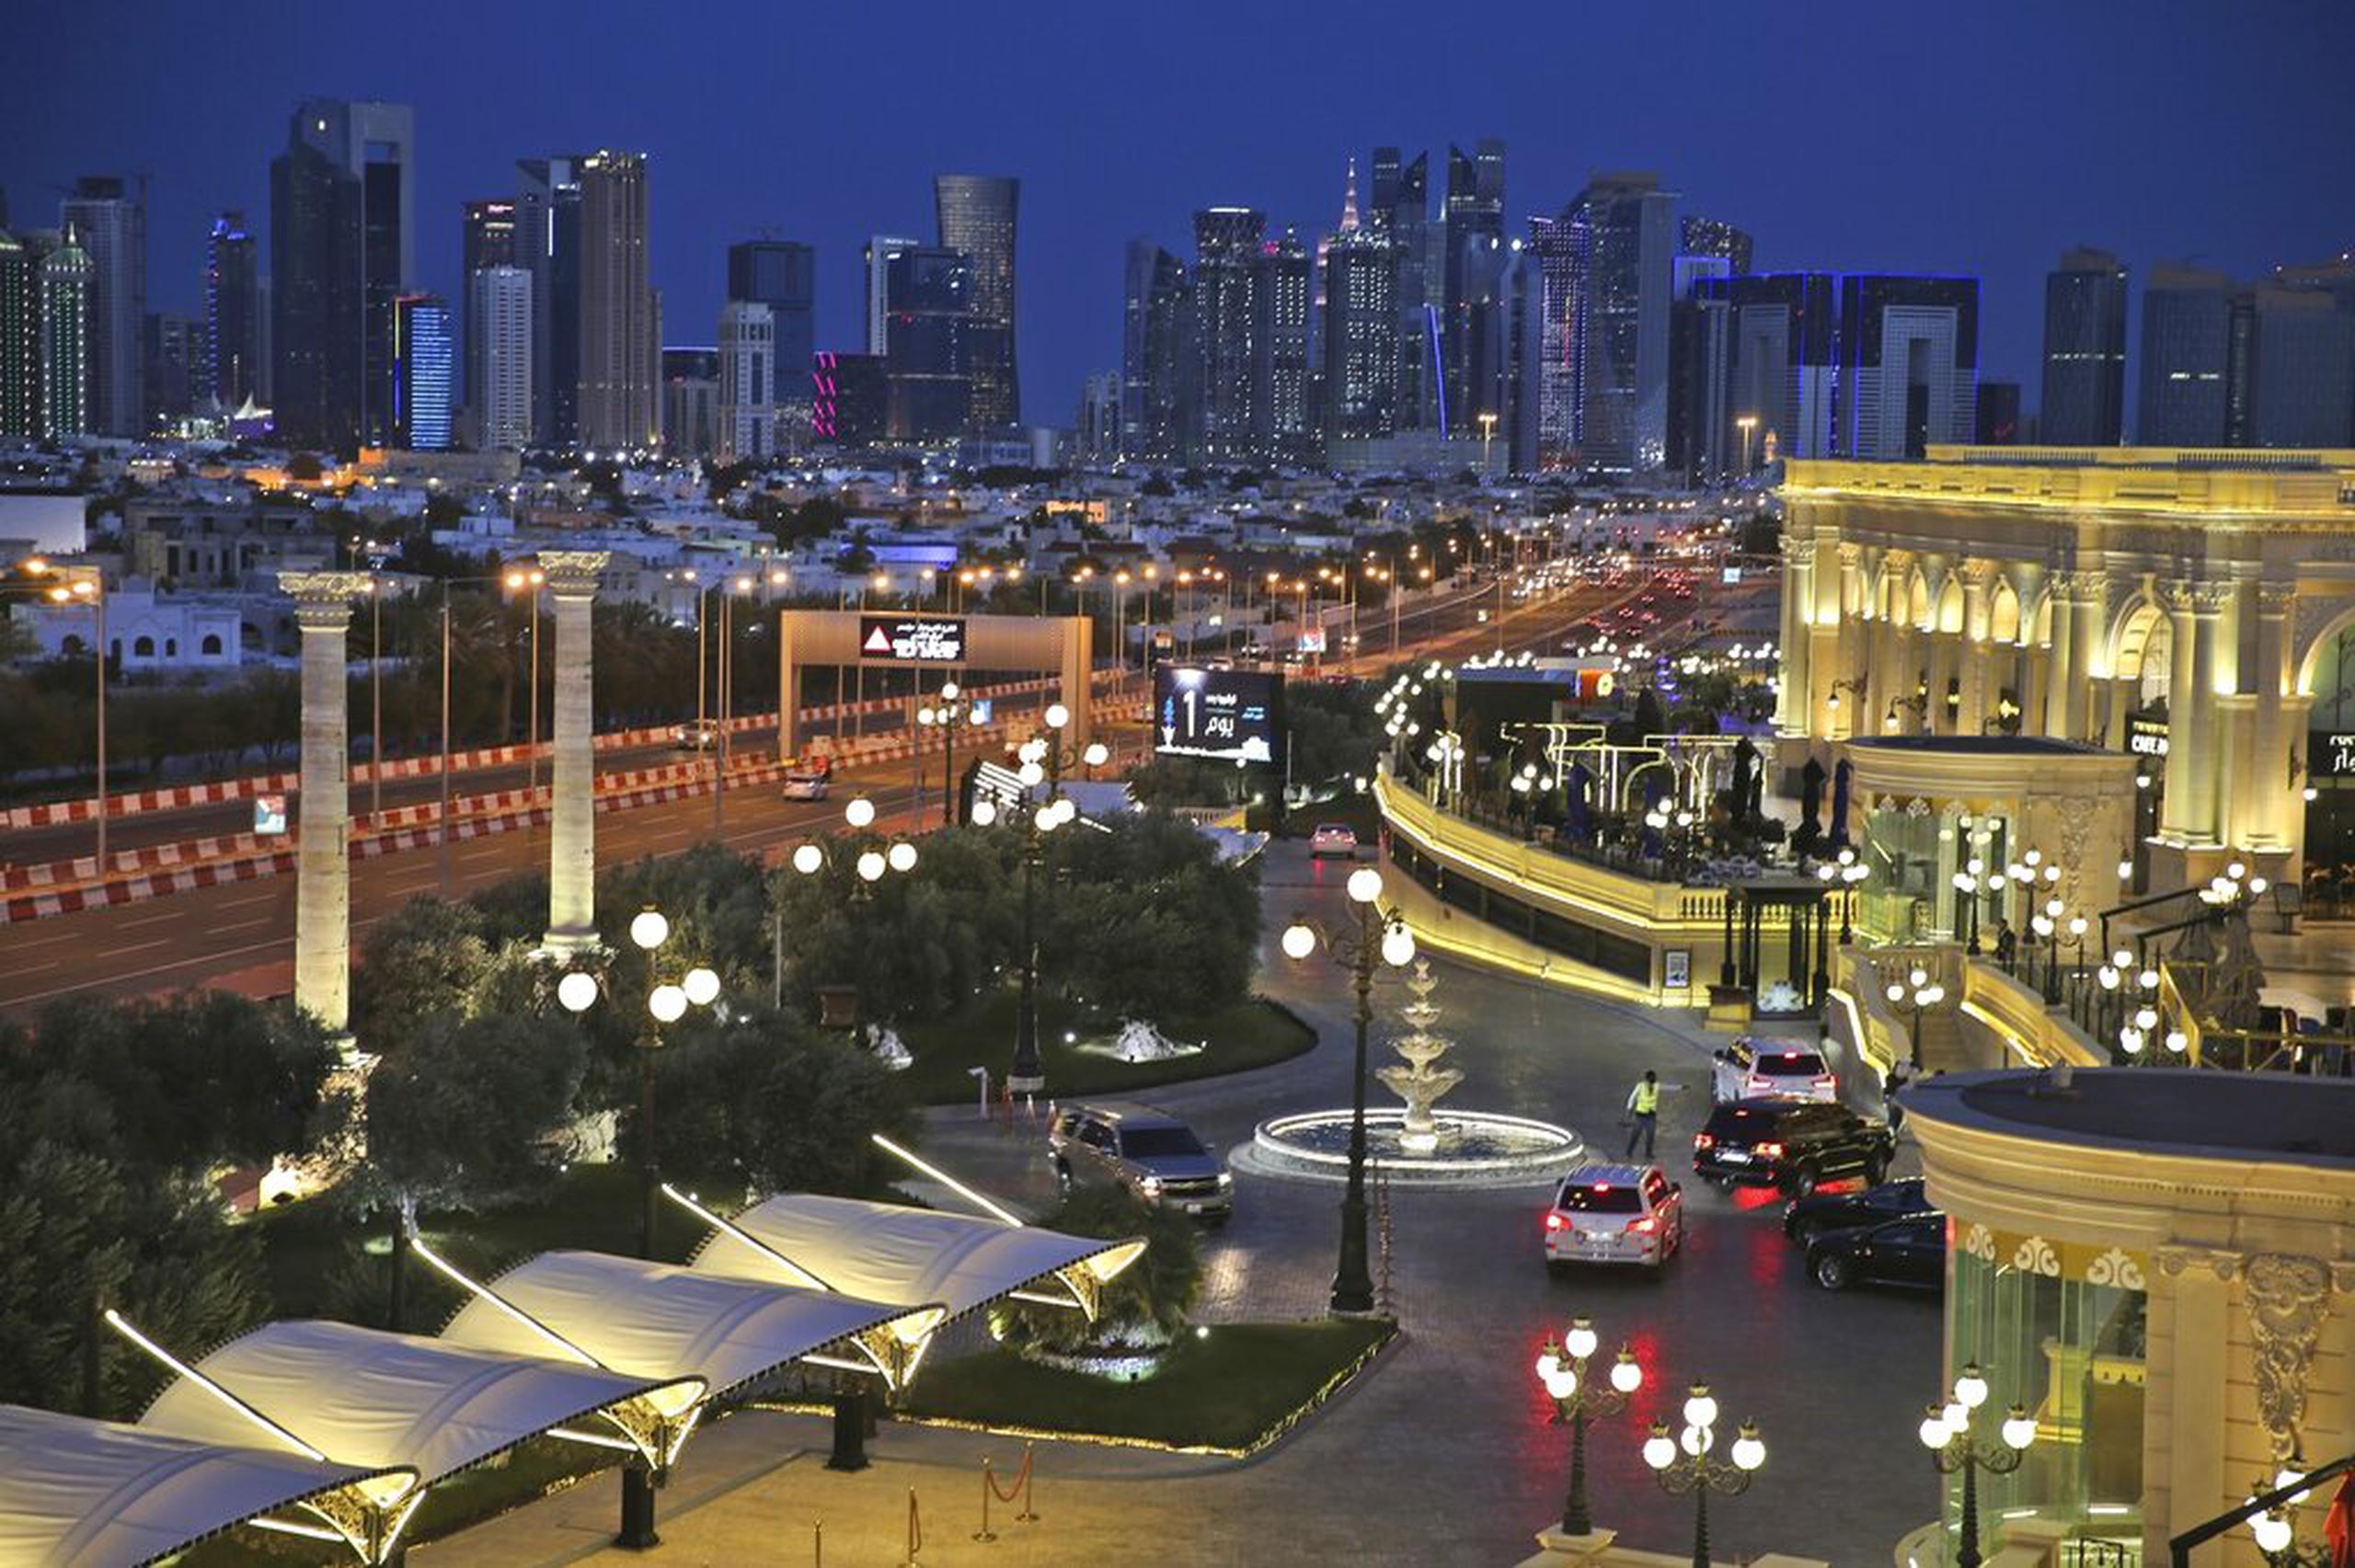 Vista general de Doha, mientras los autos llegan al centro comercial de lujo Al Hazm.